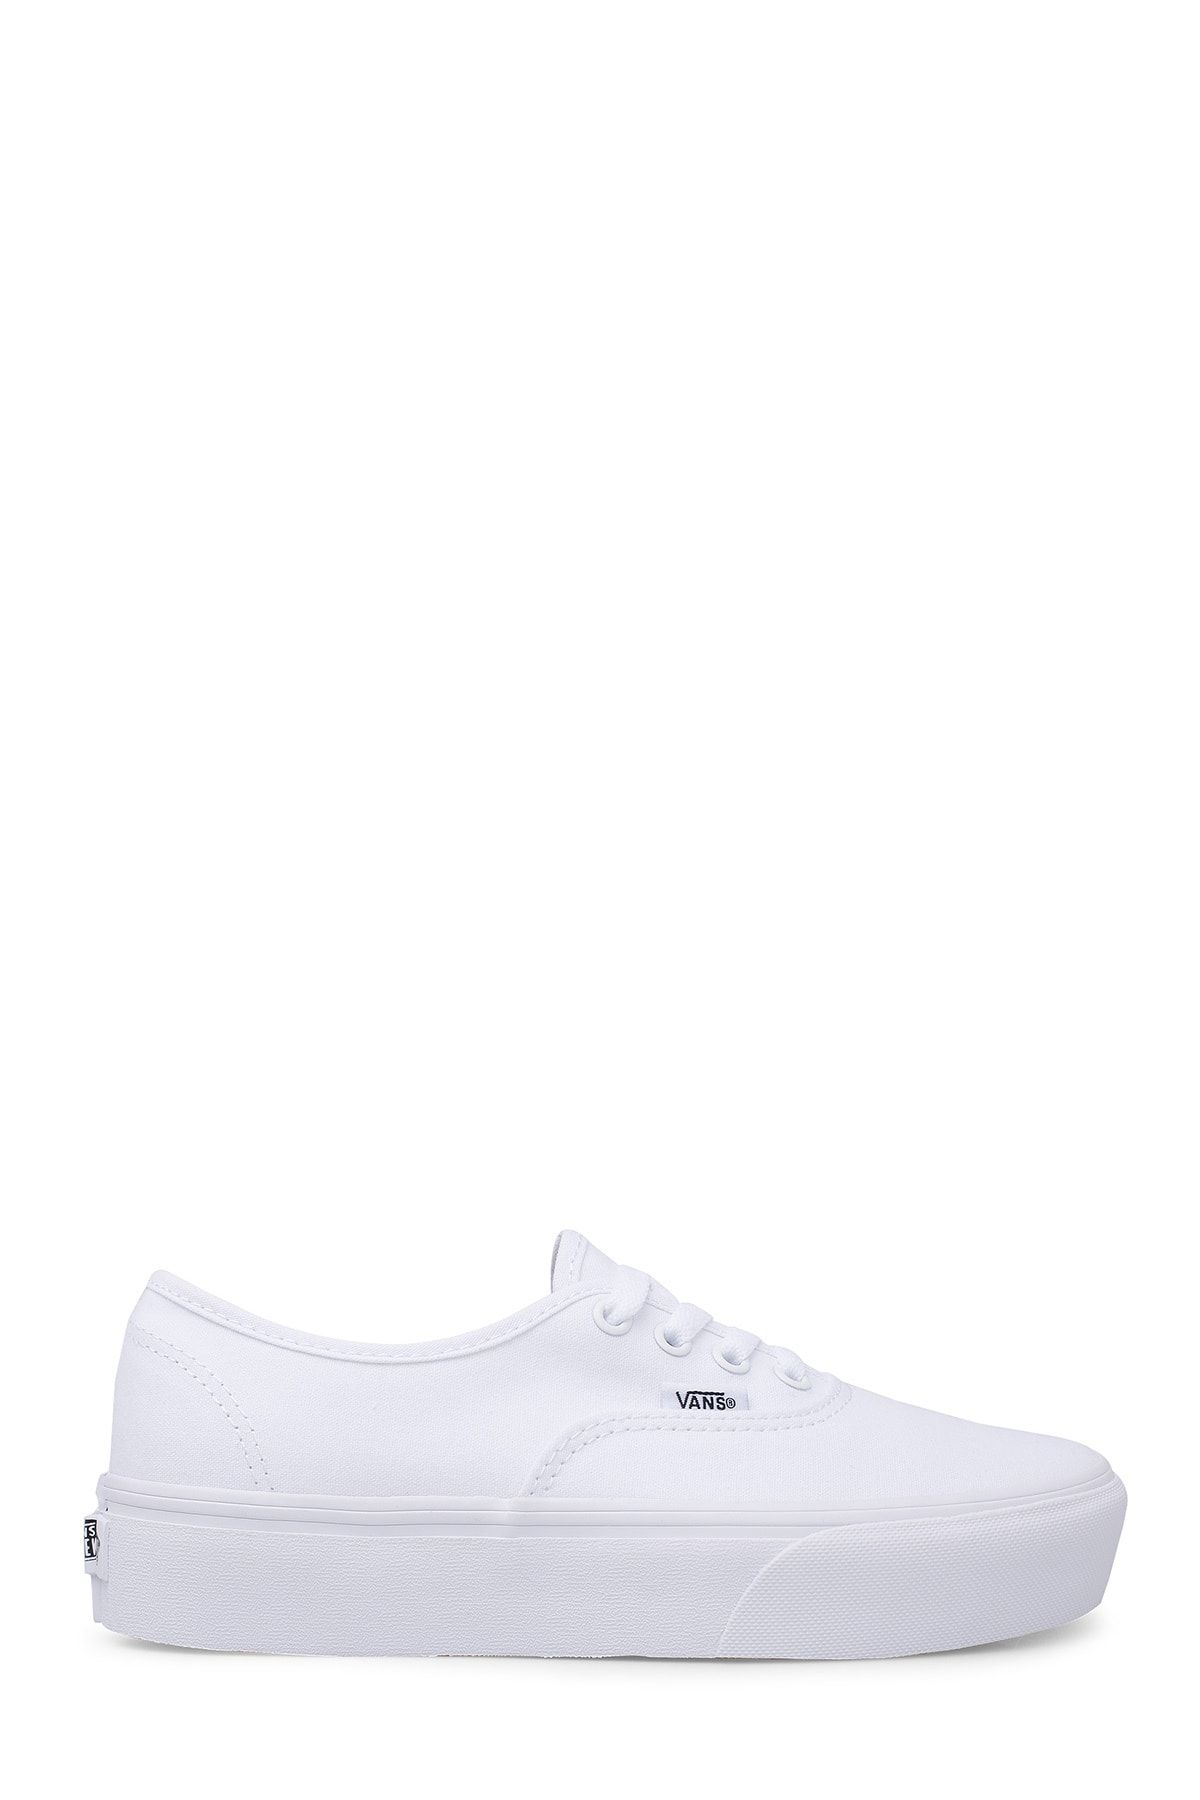 Vans Unisex Beyaz Sneaker VN0A3AV8W001